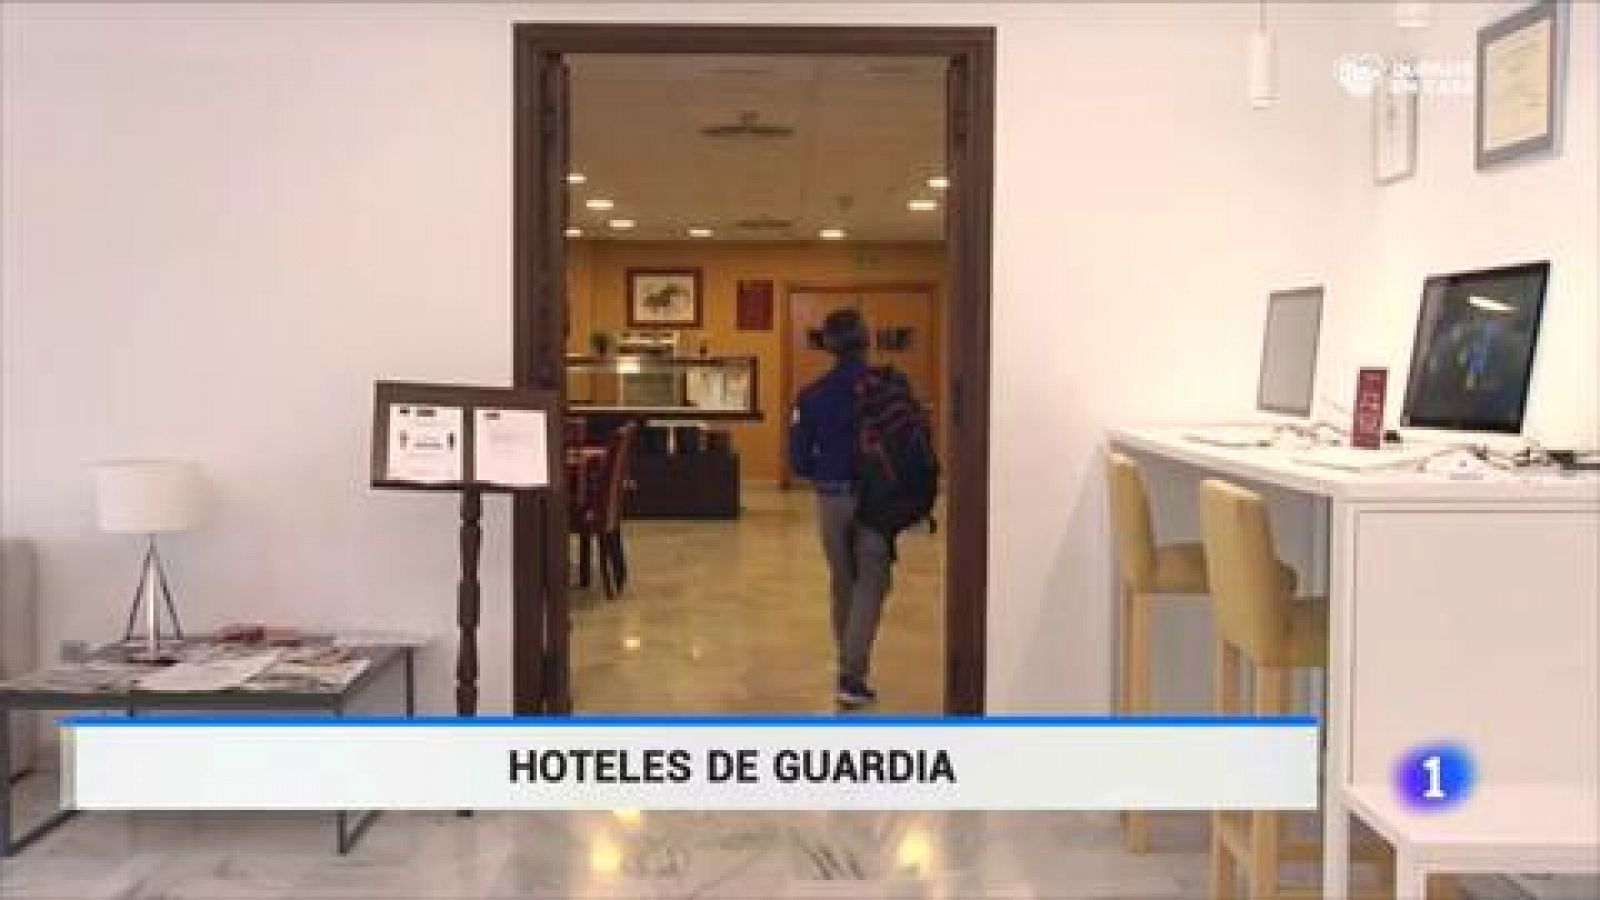 Vídeo: Hoteles de guardia para trabajadores de servicios esenciales